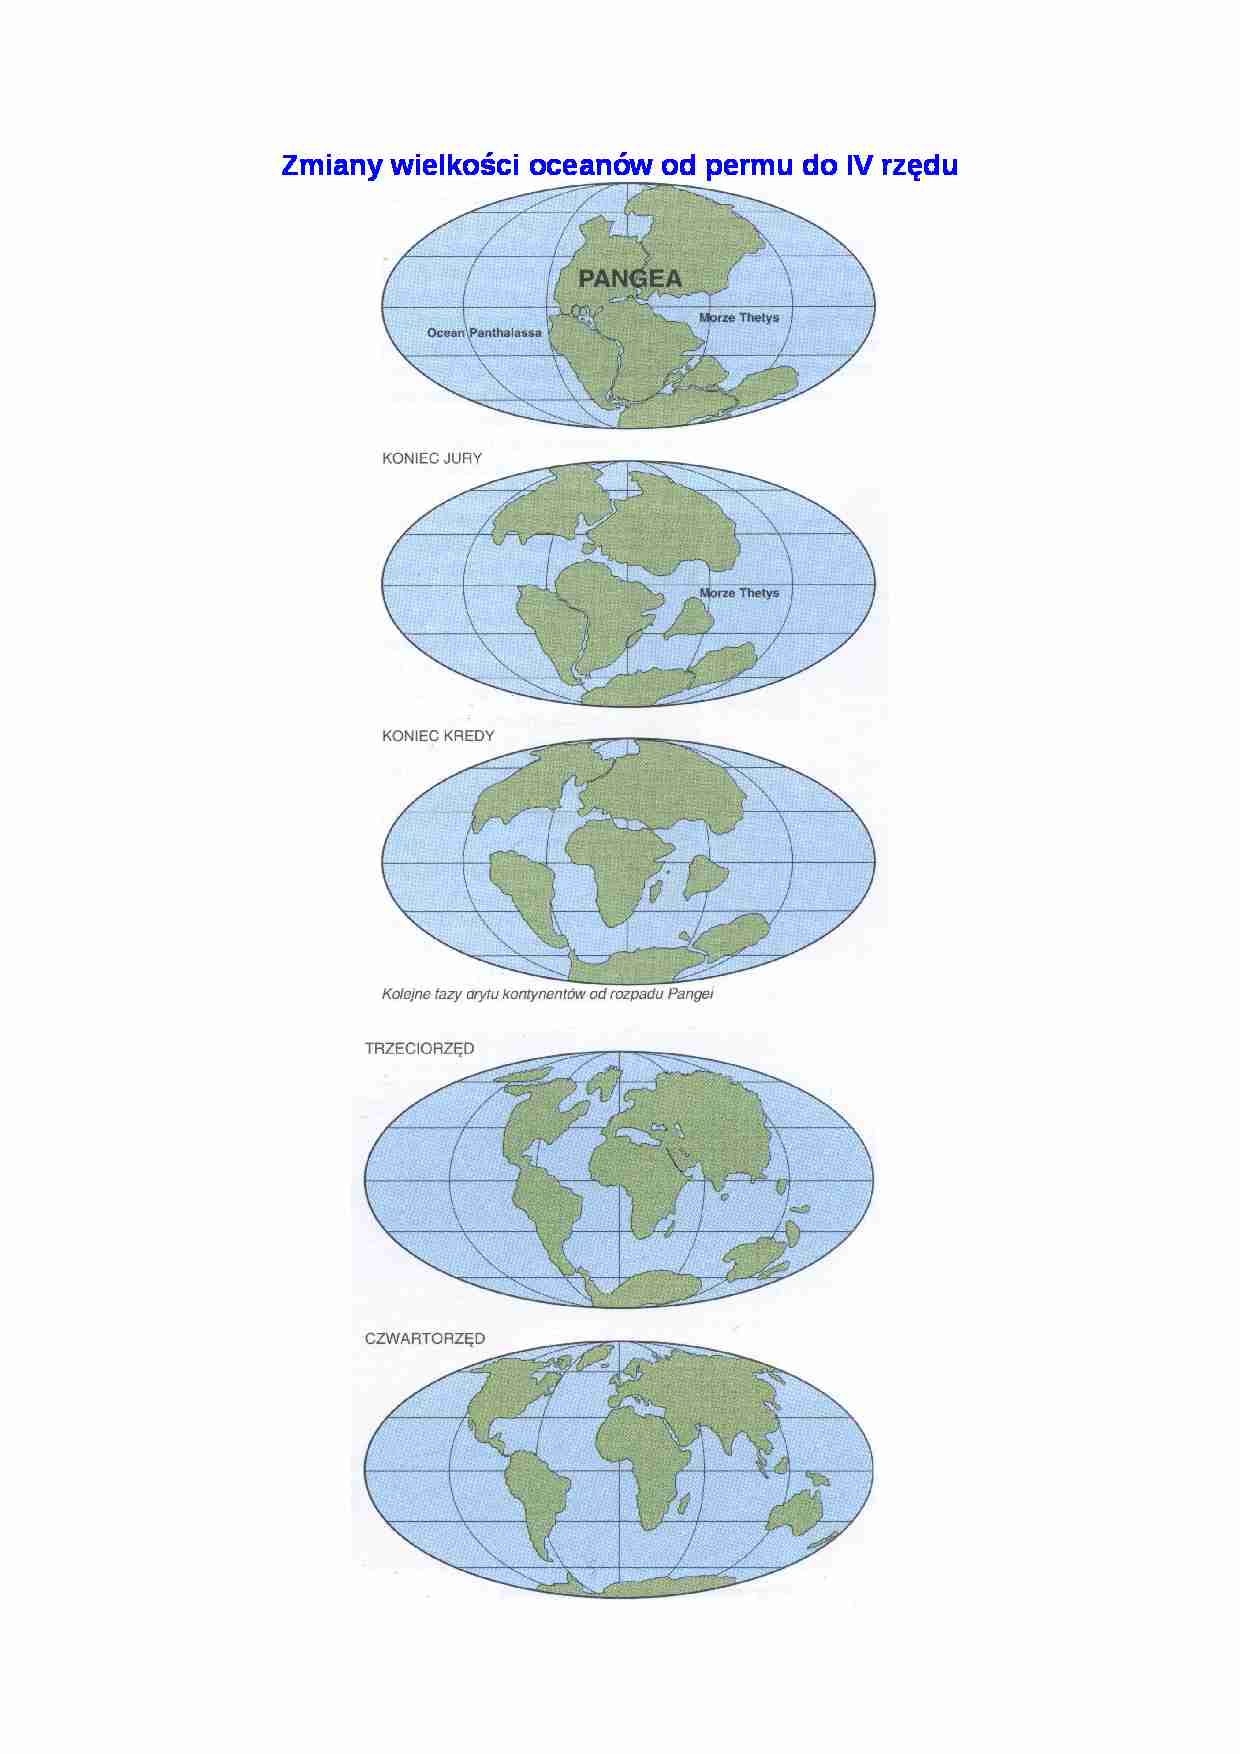 Zmiany wielkości oceanów od permu do czwartorzędu - strona 1